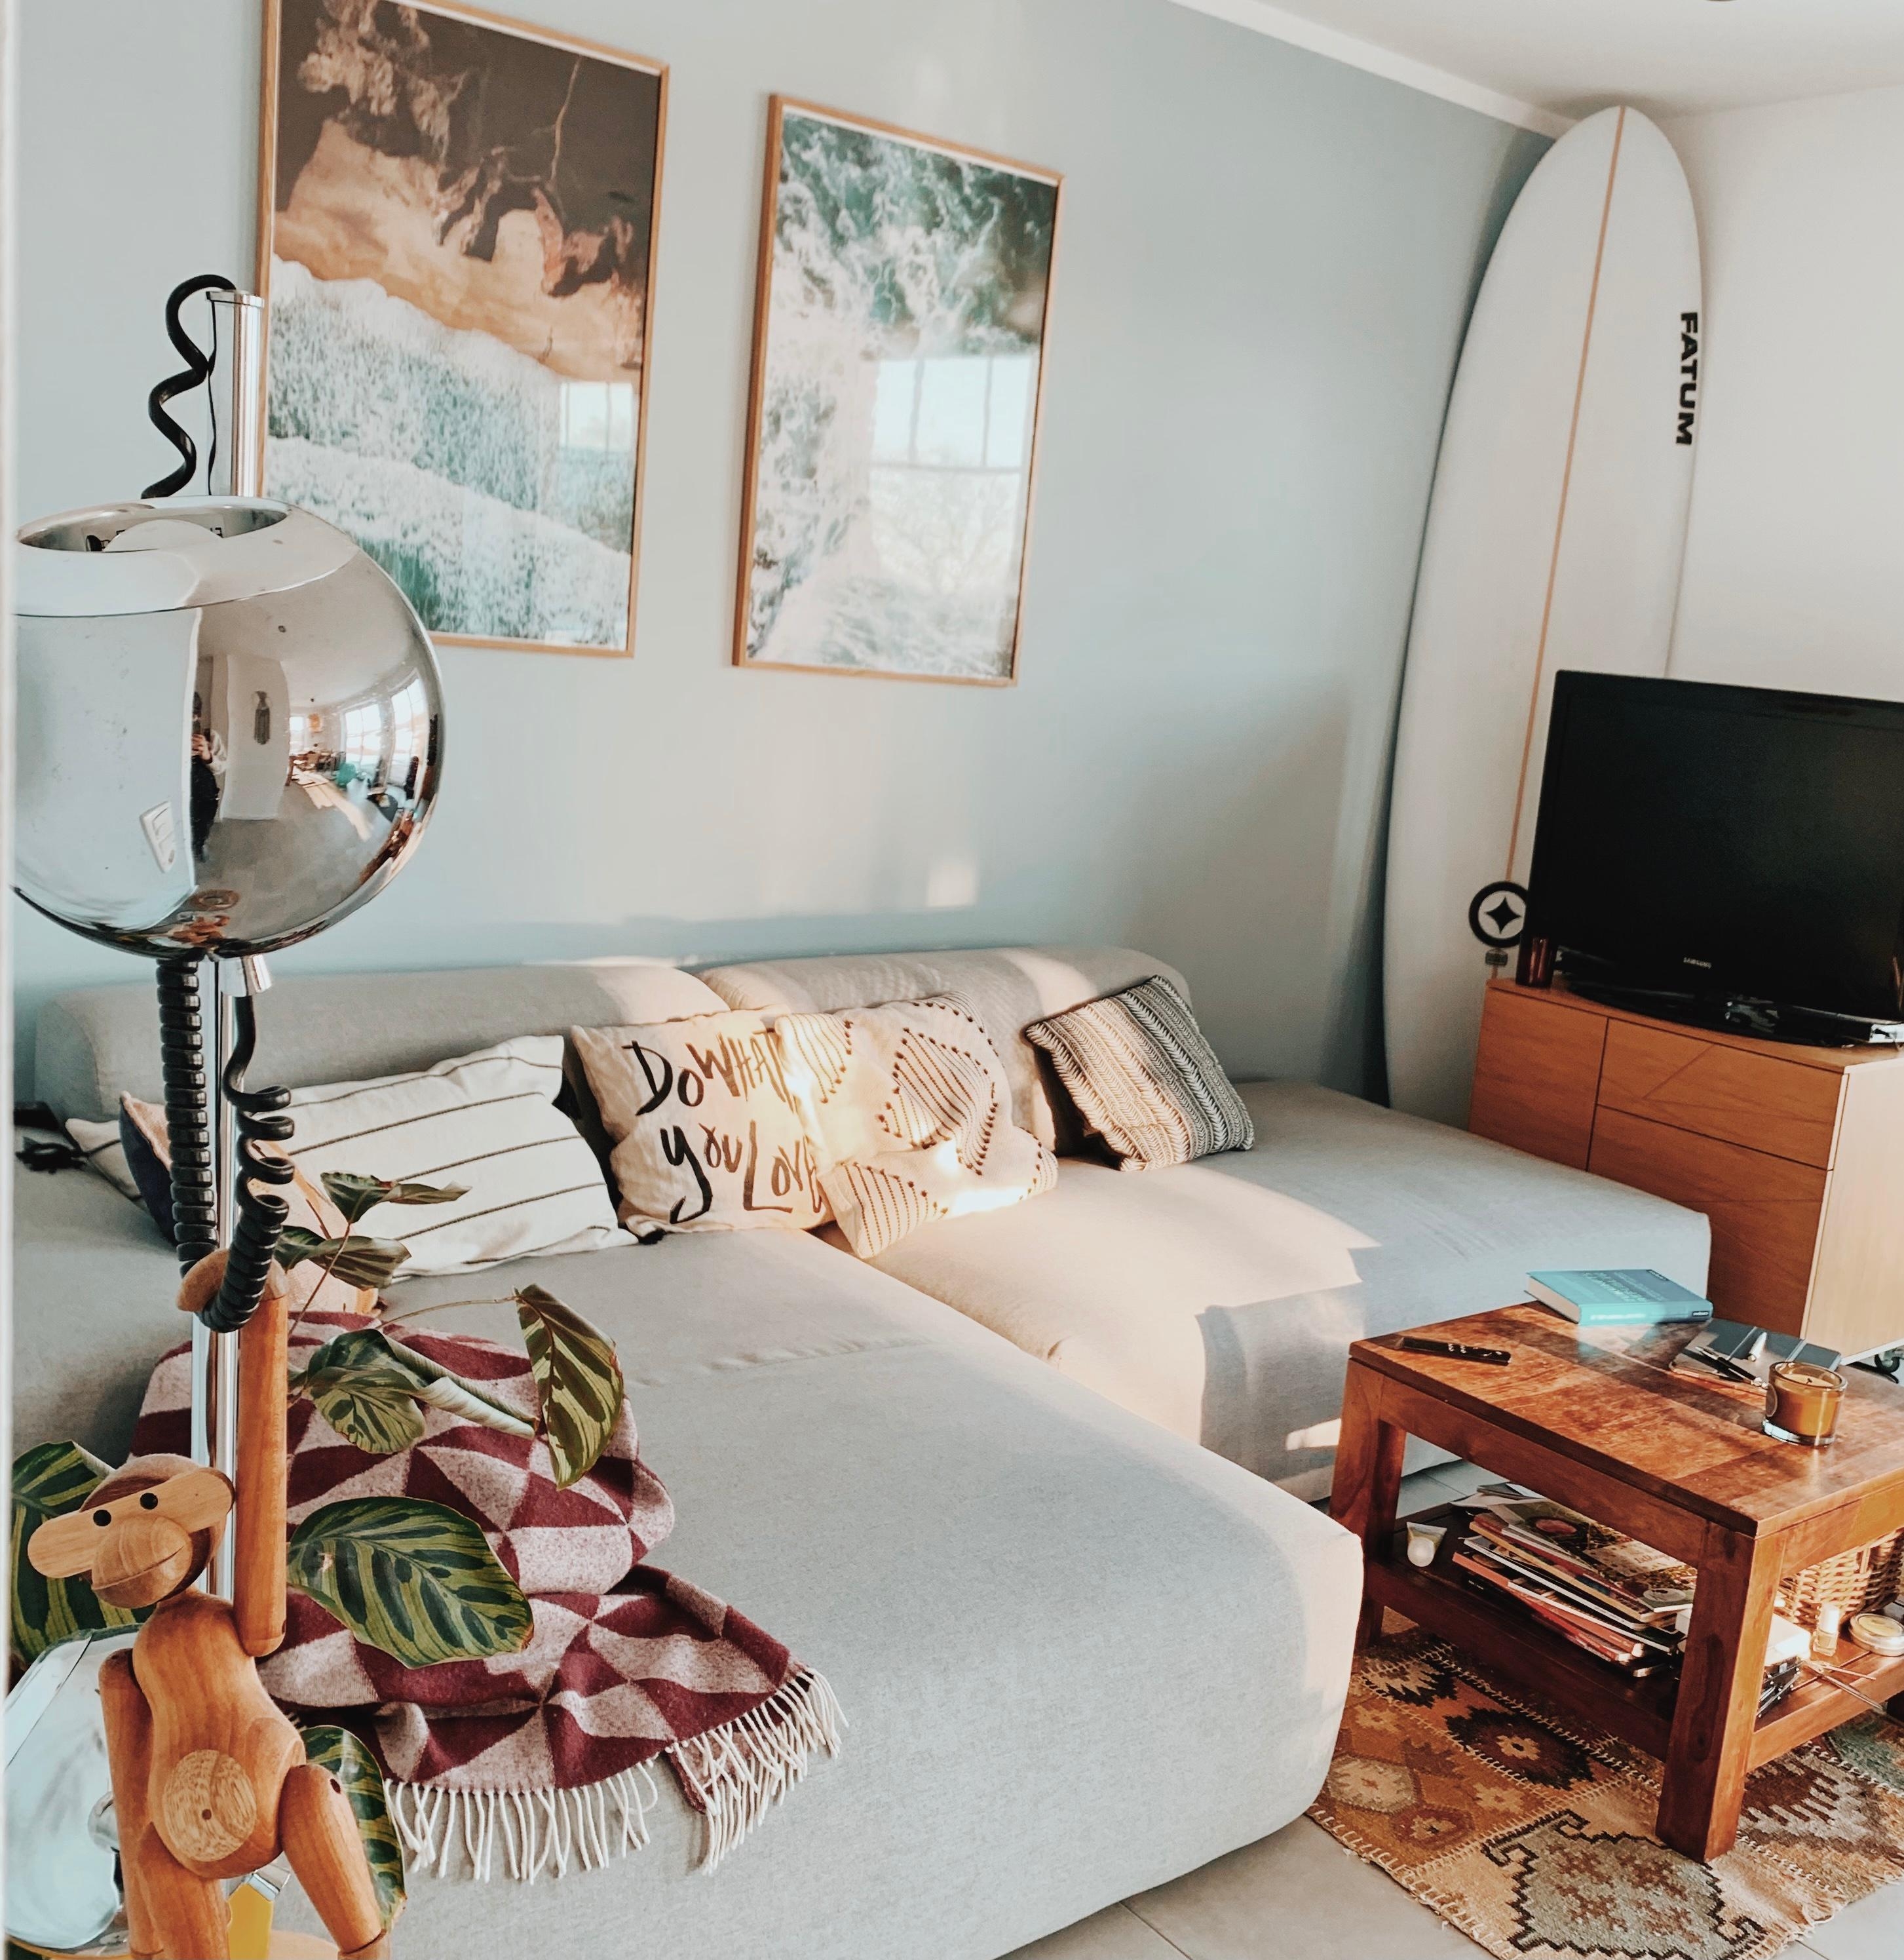 Im Wohnzimmer vom nächsten Surfurlaub träumen.
#wohnzimmer #surfstyle